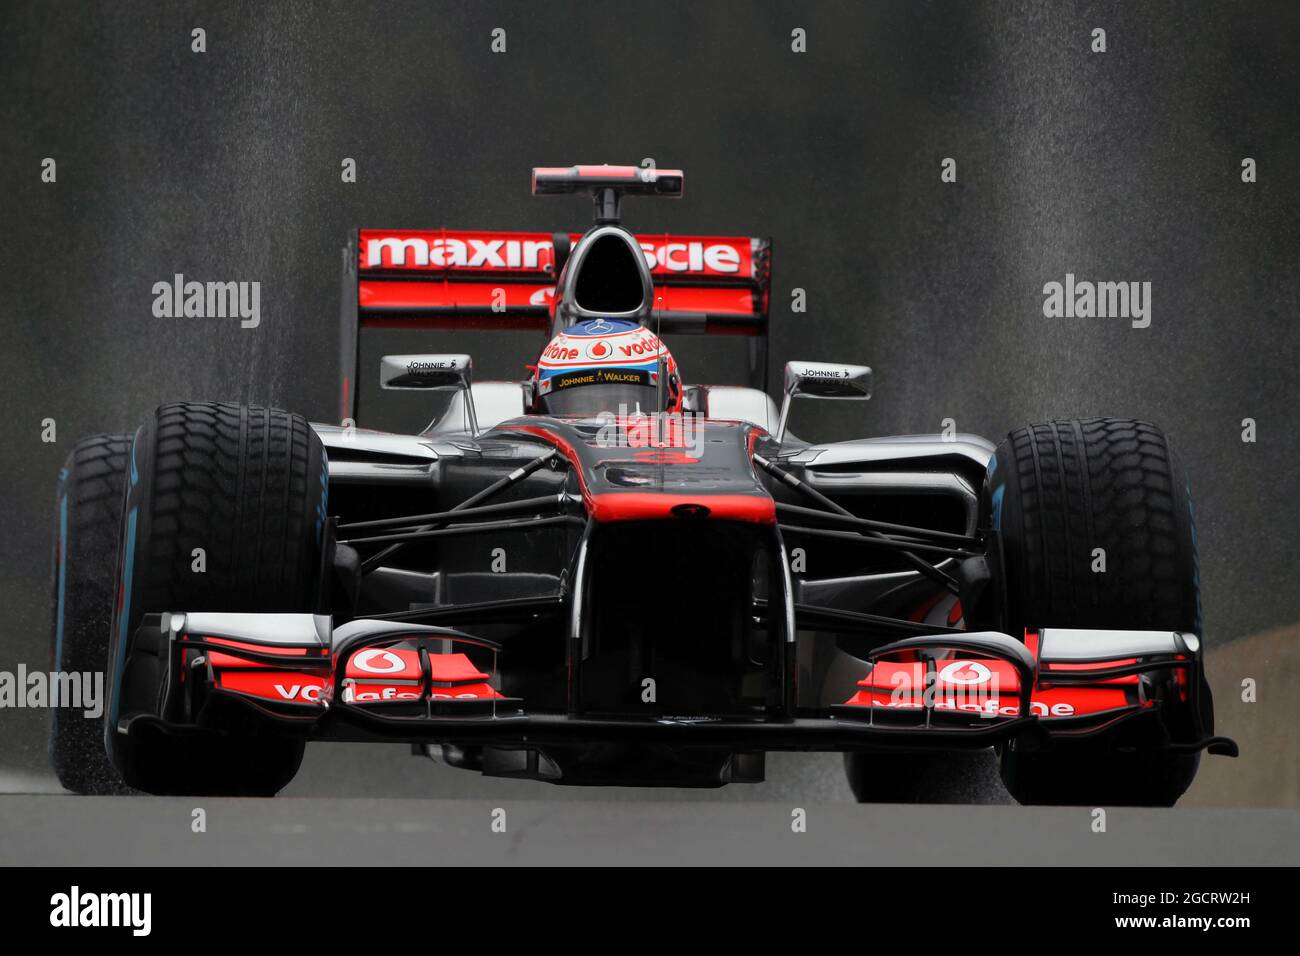 Jenson Button (GBR) McLaren MP4/27. Grand Prix de Belgique, vendredi 31 août 2012. Spa-Francorchamps, Belgique. Banque D'Images